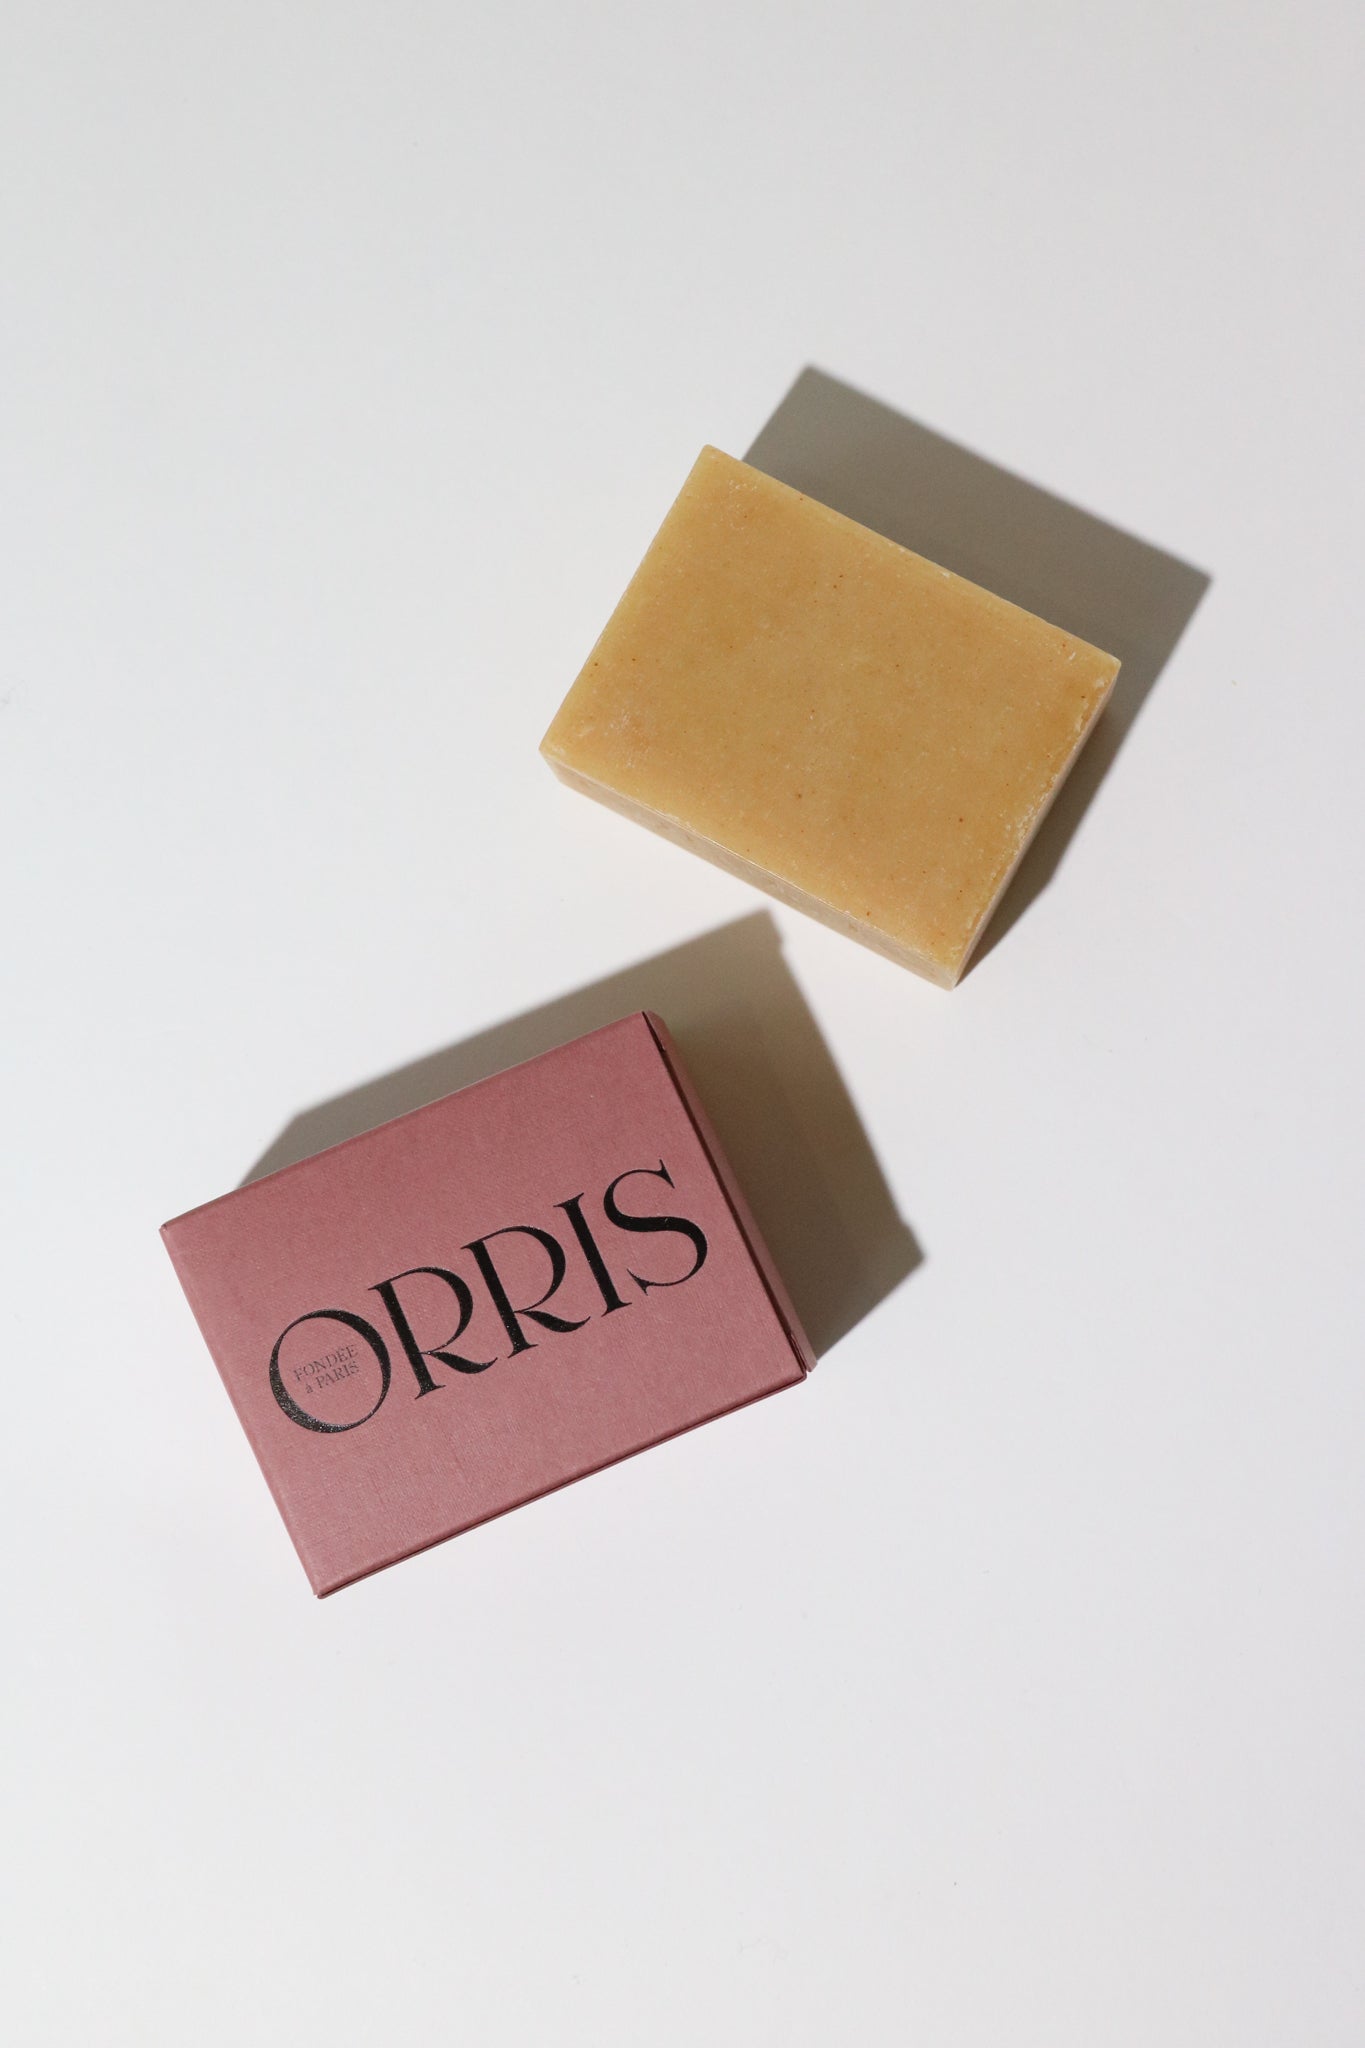 Shop Sommer Orris Paris Le Nomade Artisanal Soap